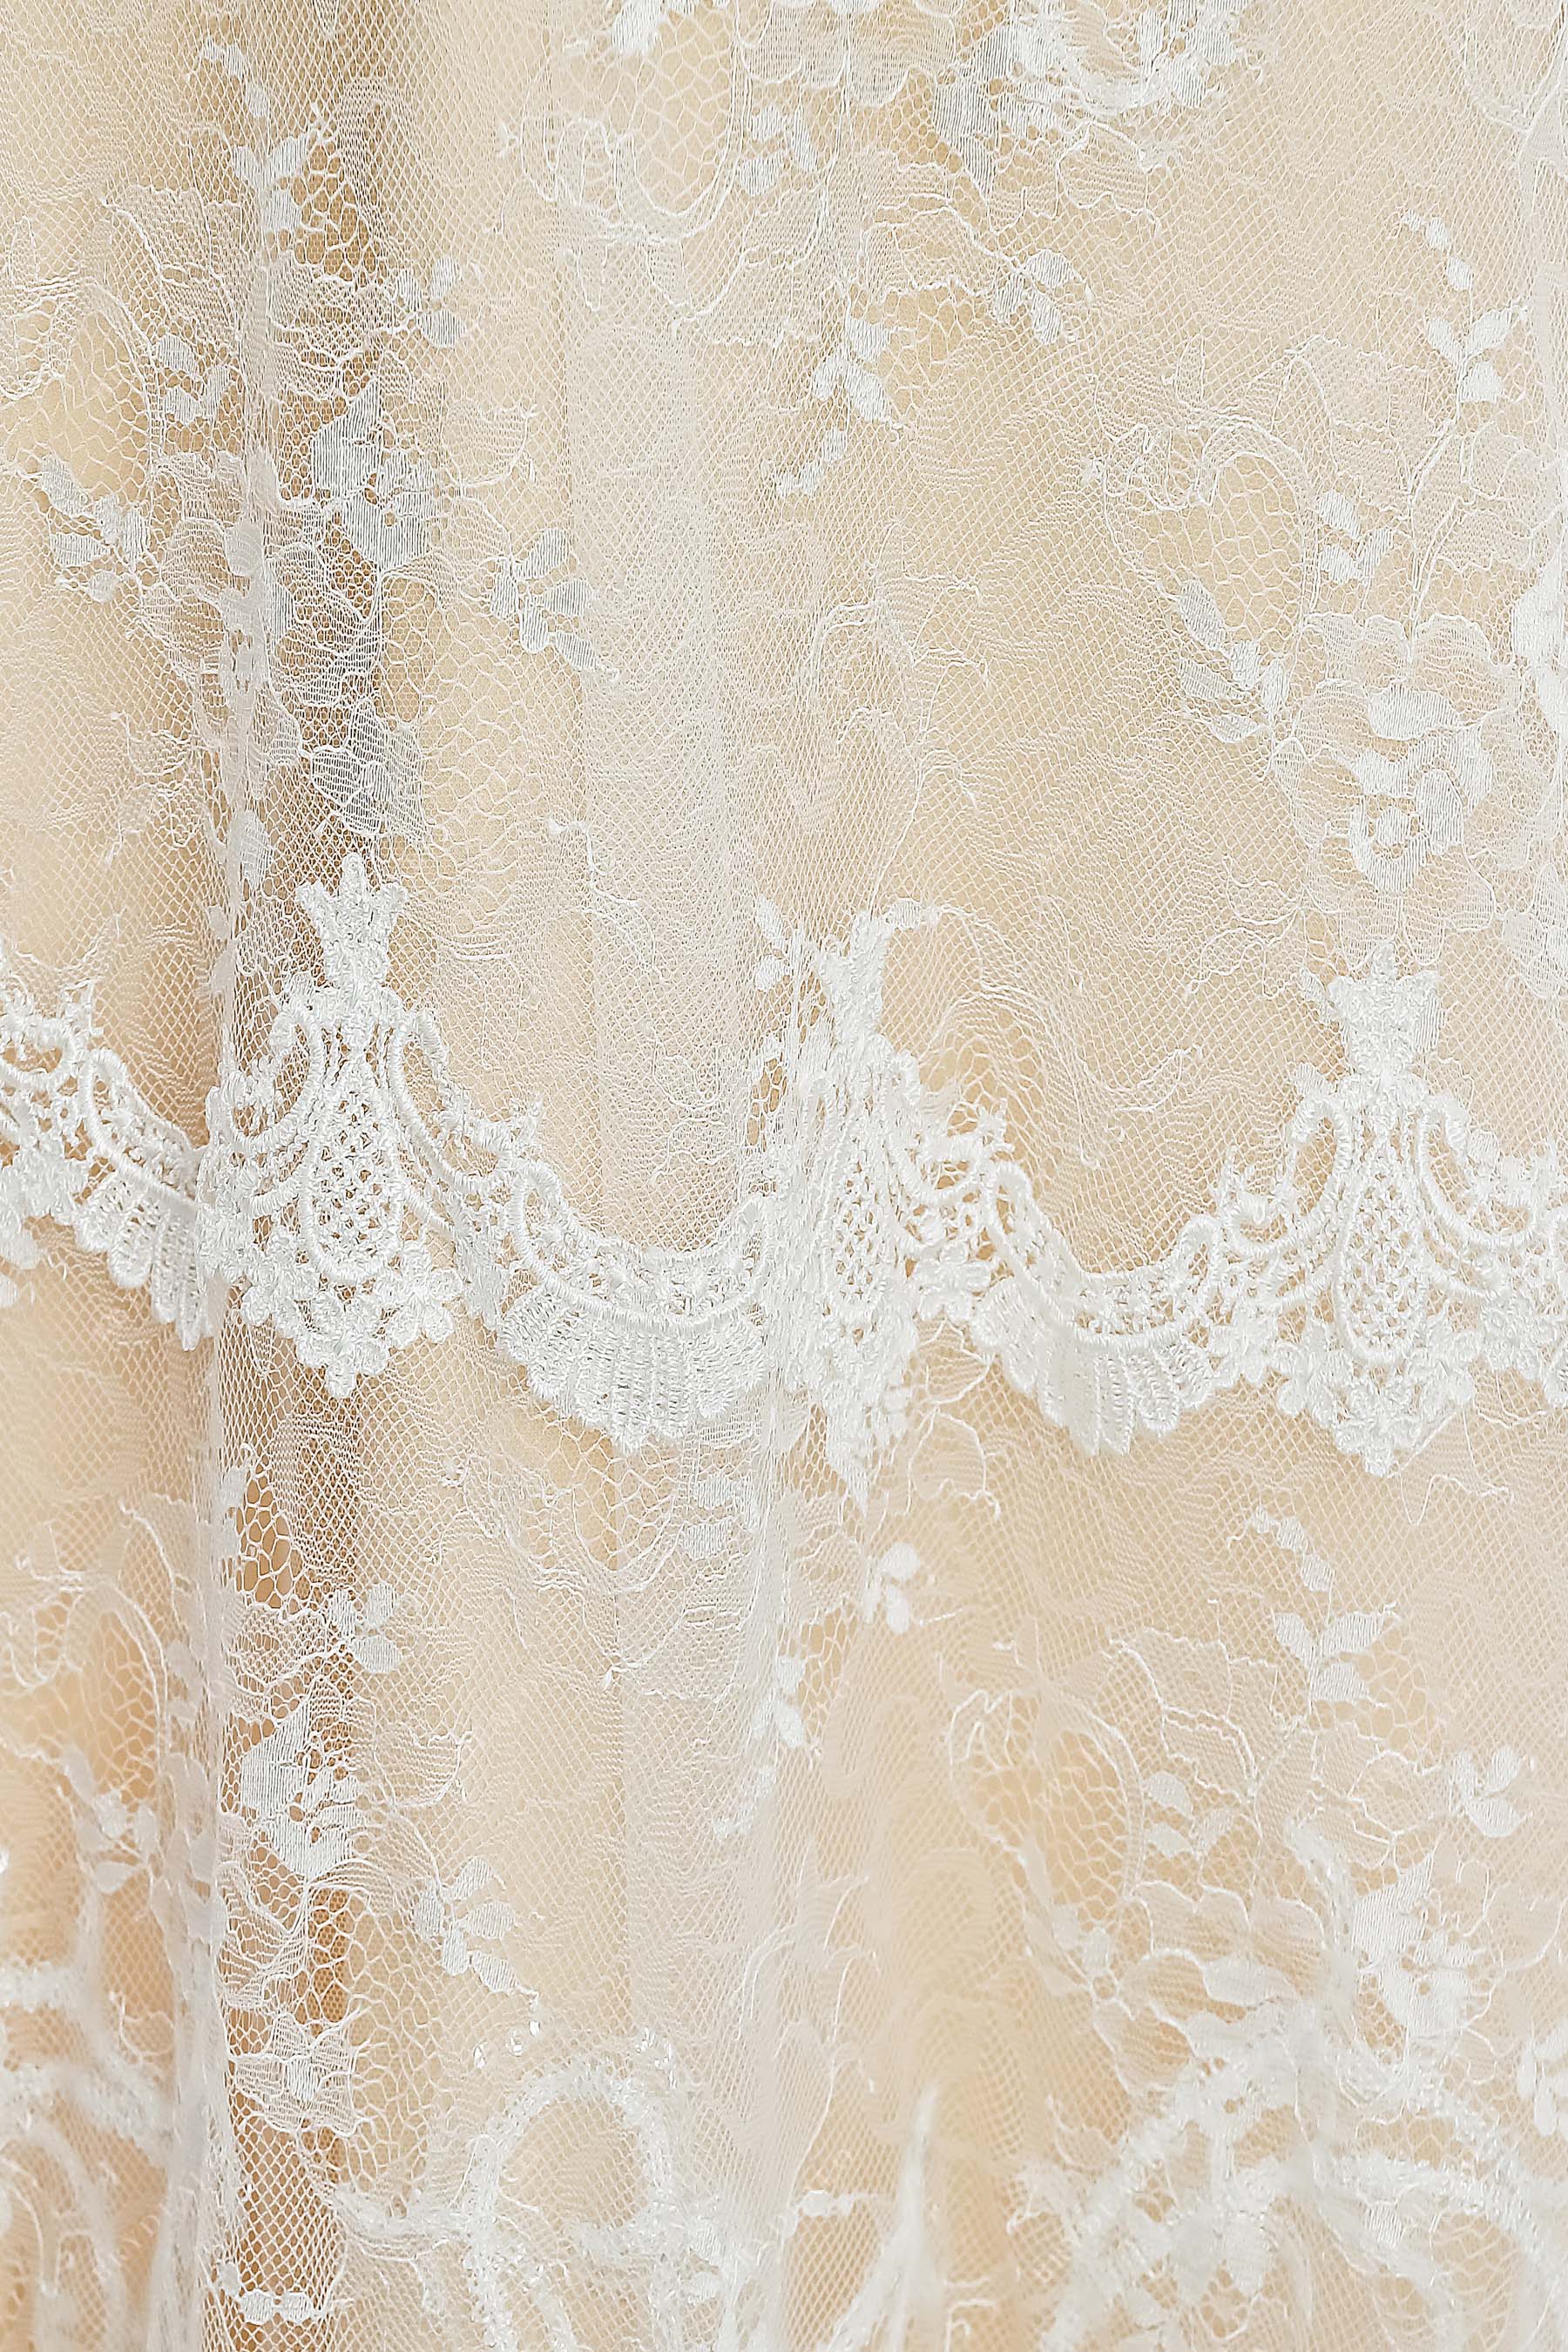 appliqued lace bridal gown